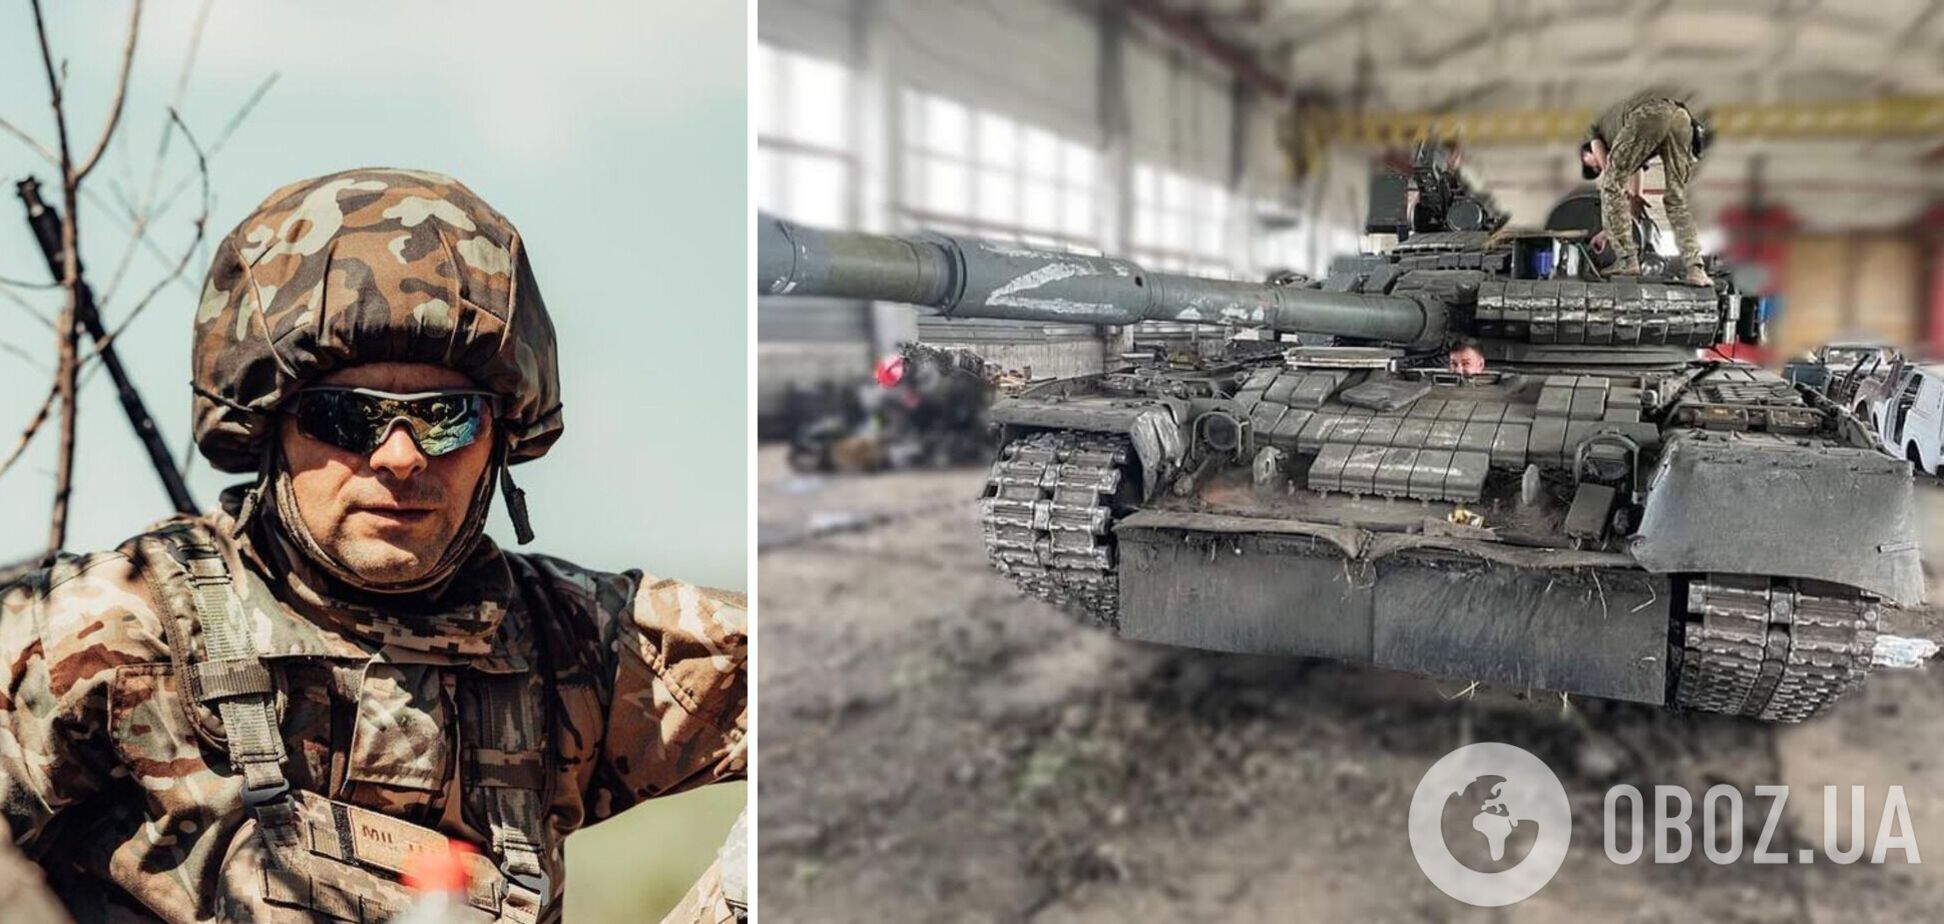 'Було ваше - стало наше': у ЗСУ показали трофейний Т-80, який тепер працюватиме проти окупантів. Фото 